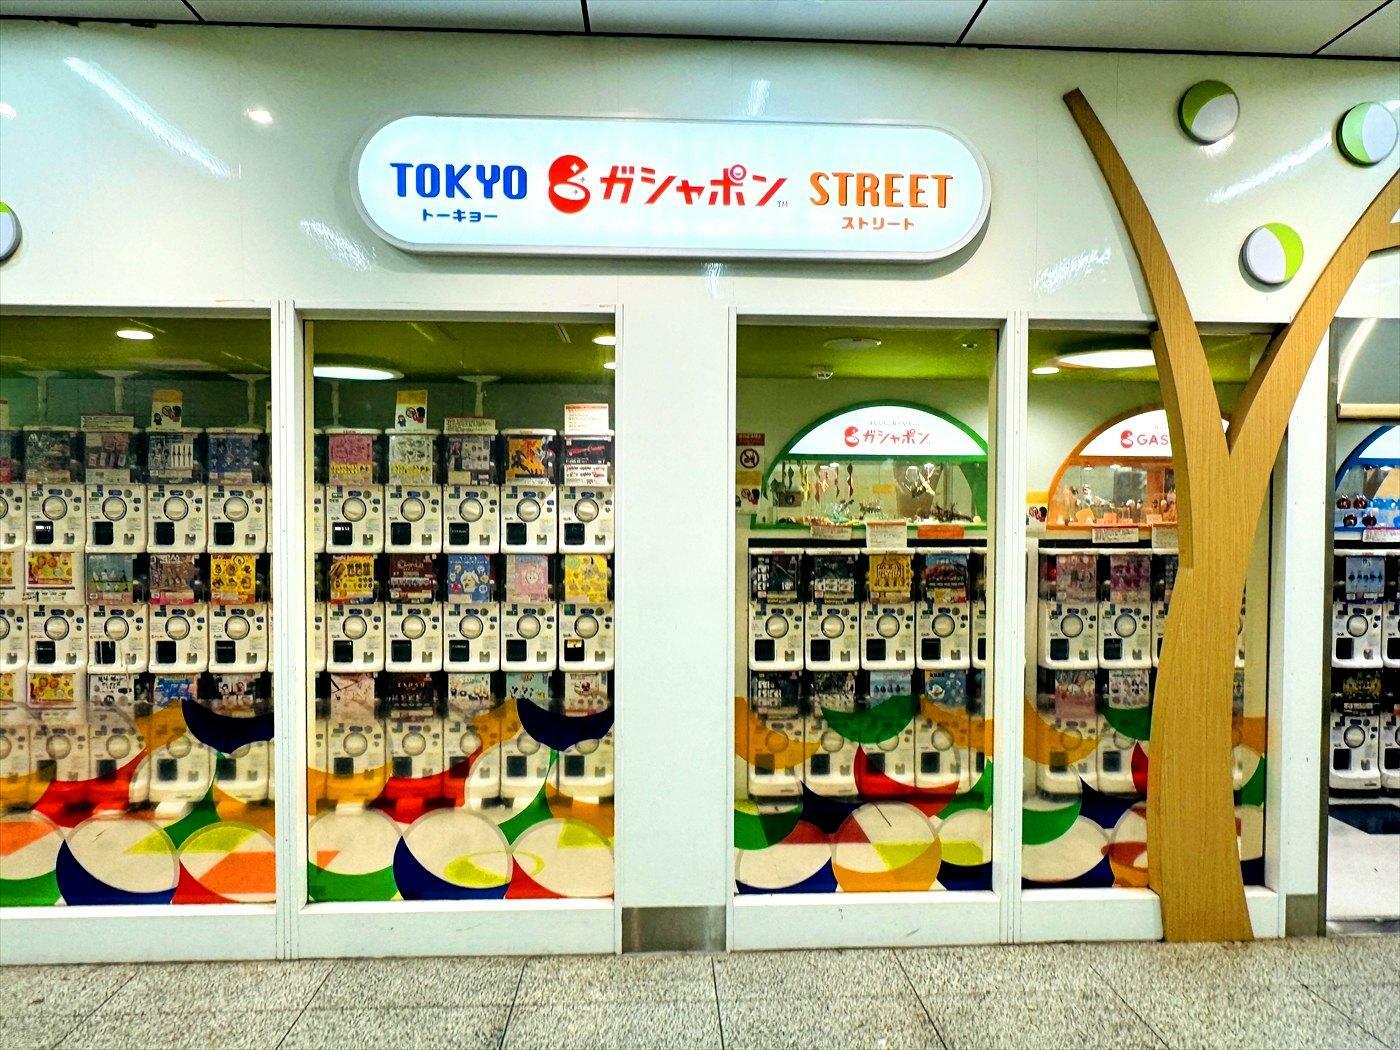 東京駅一番街 地下1階 東京キャラクターストリート内「トーキョーガシャポンストリート」